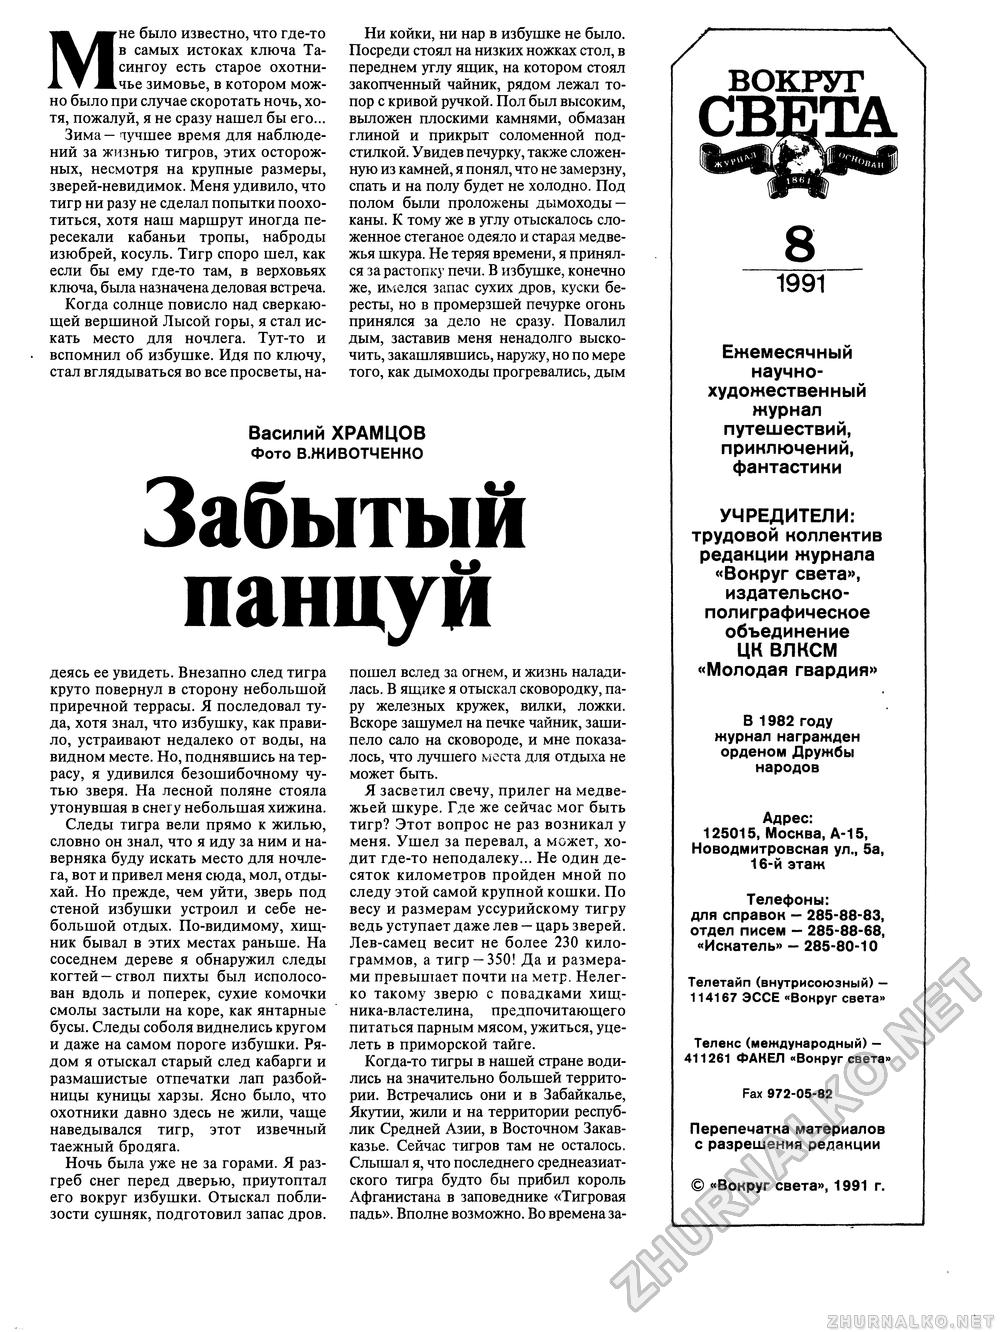 Вокруг света 1991-08, страница 3